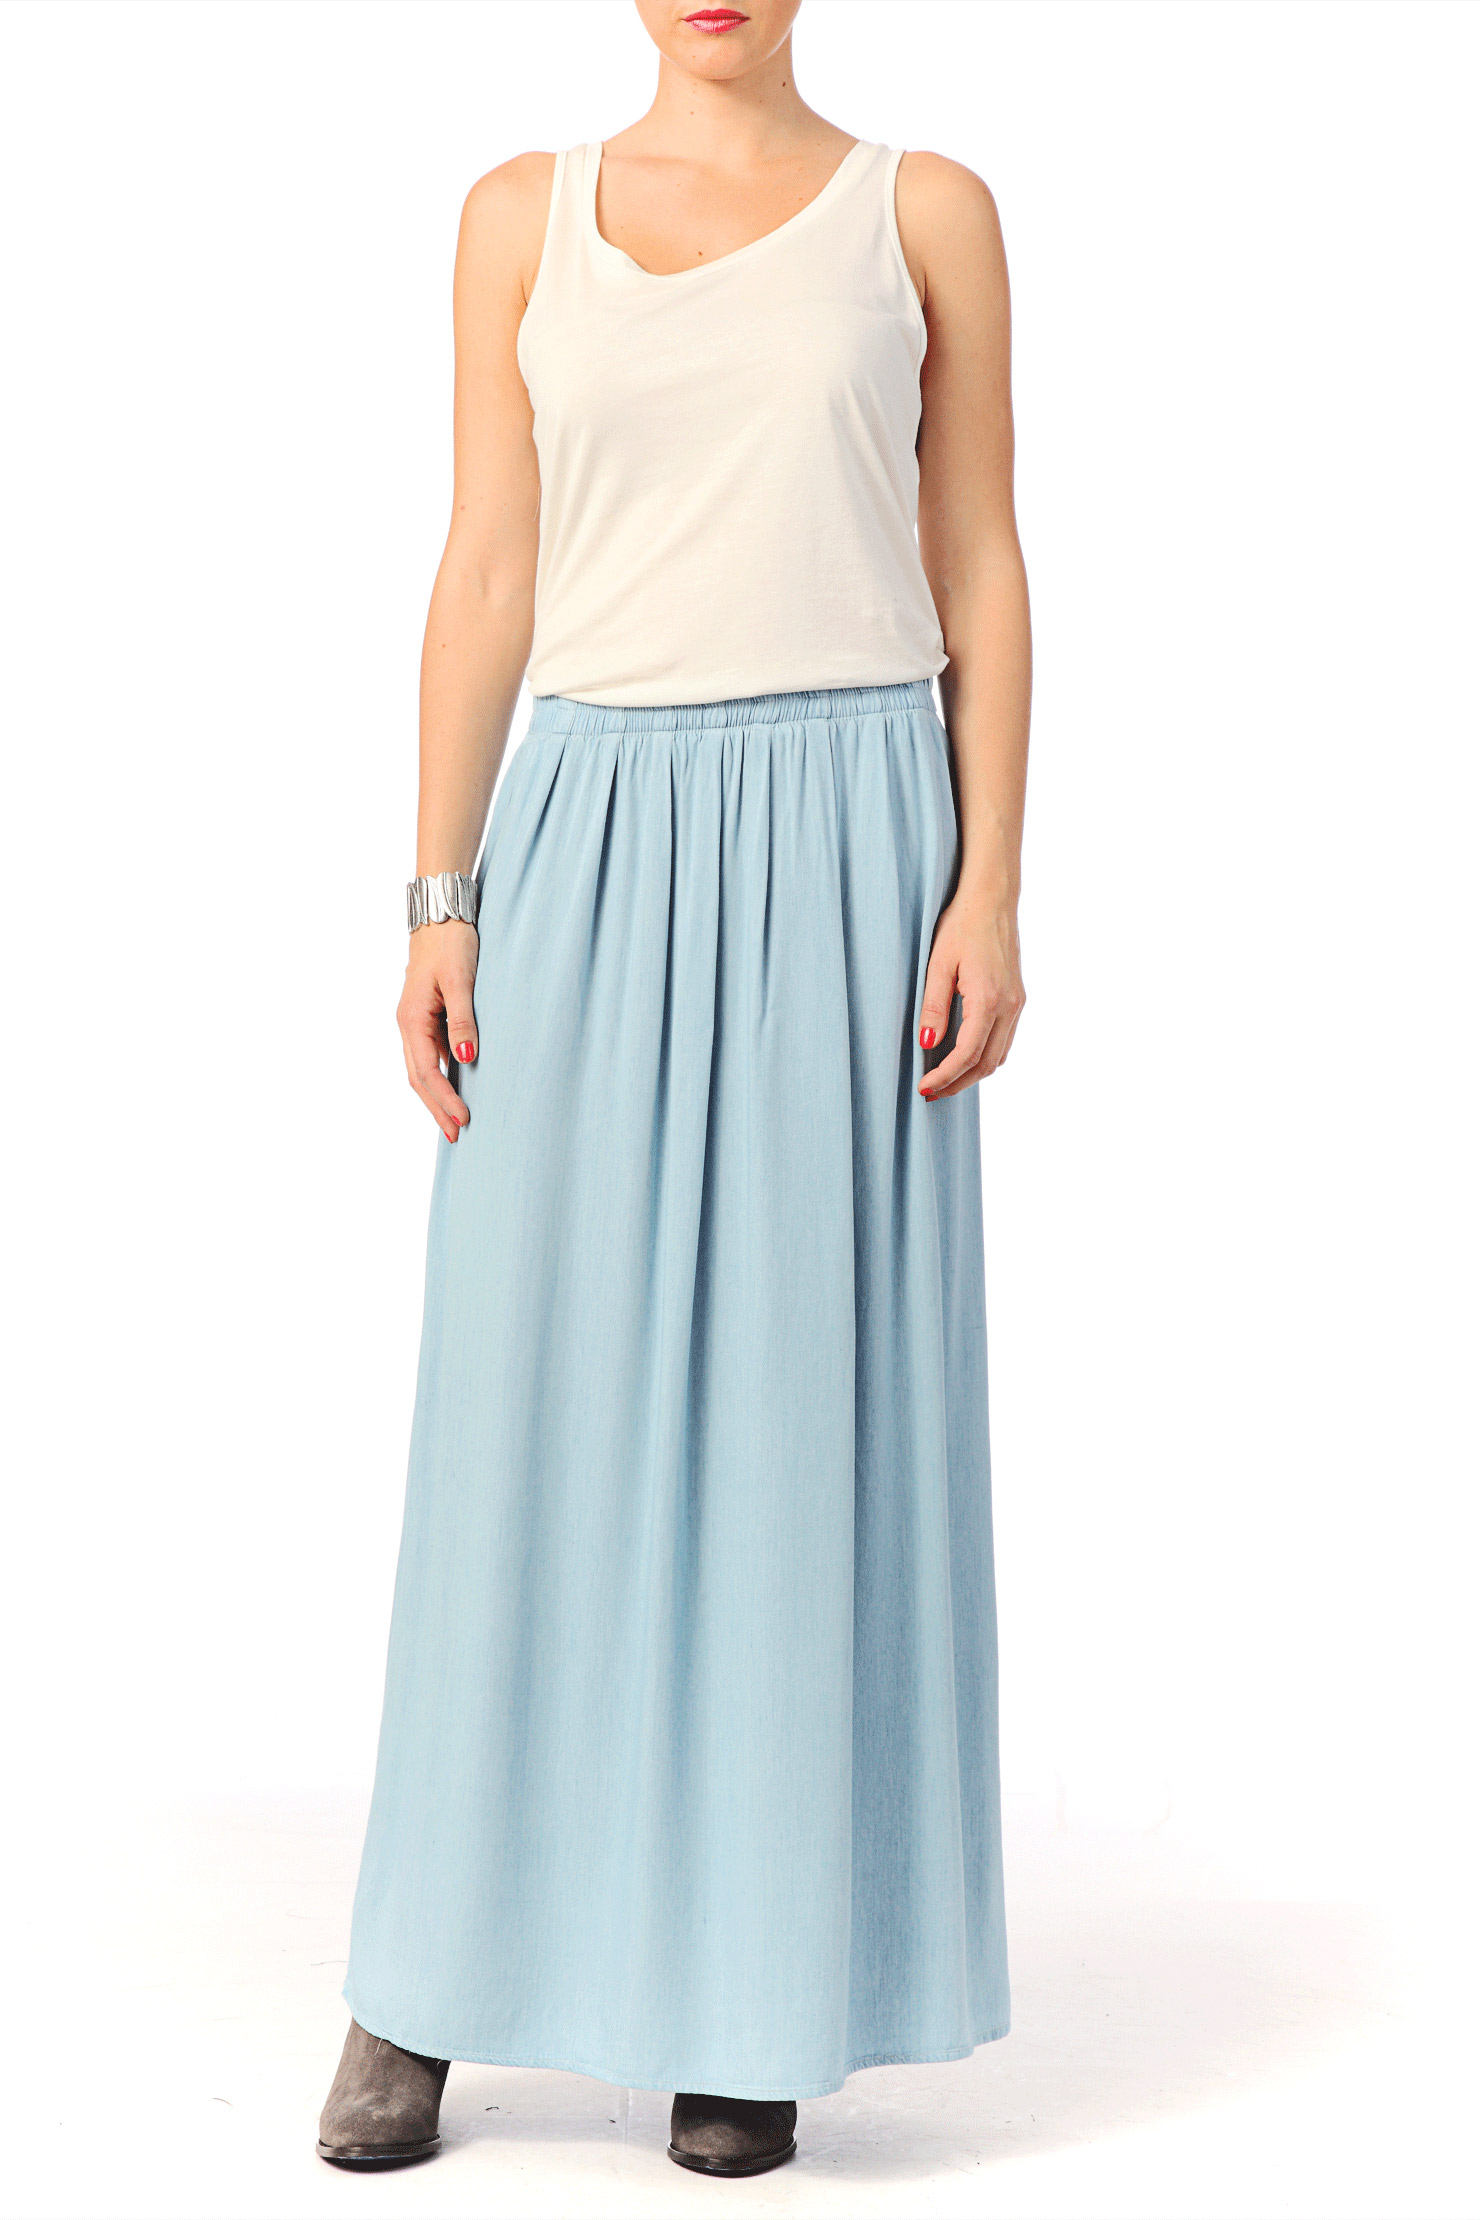 Selected Midi Skirt / Maxi Skirt - Aleja Mw Maxi Skirt Fj in Blue | Lyst